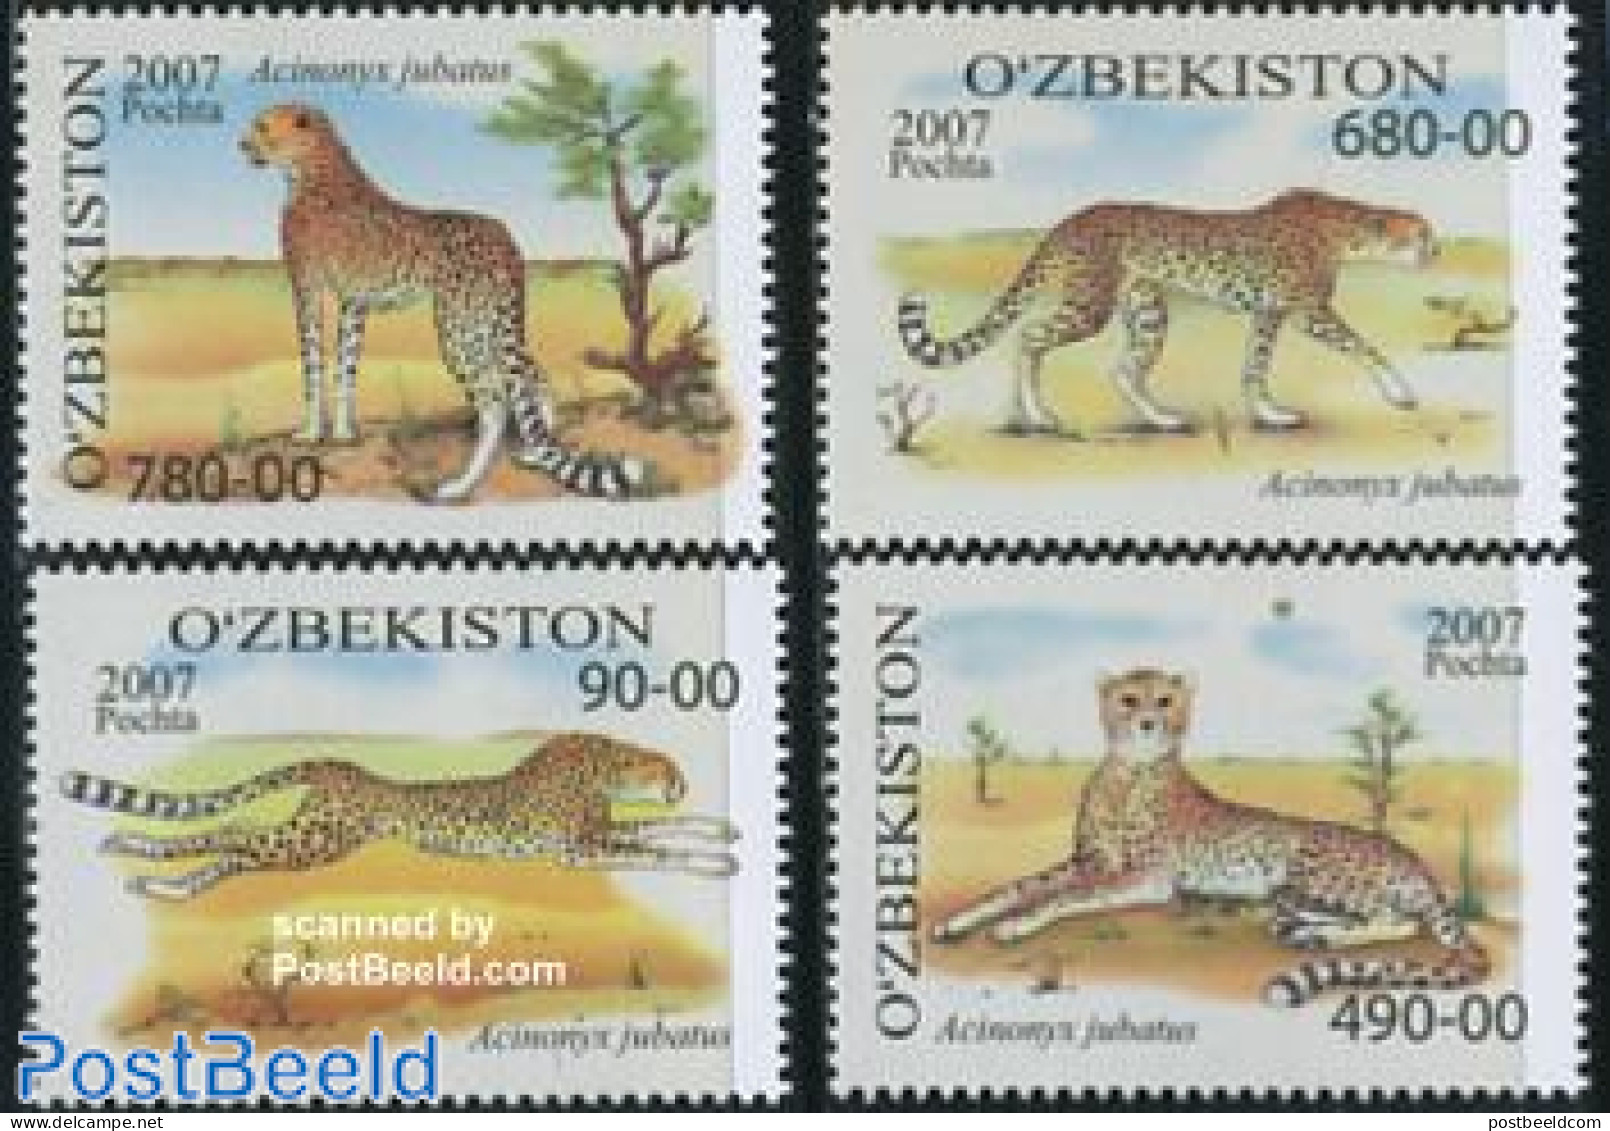 Uzbekistan 2007 Gepards 4v, Mint NH, Nature - Animals (others & Mixed) - Cat Family - Uzbekistán